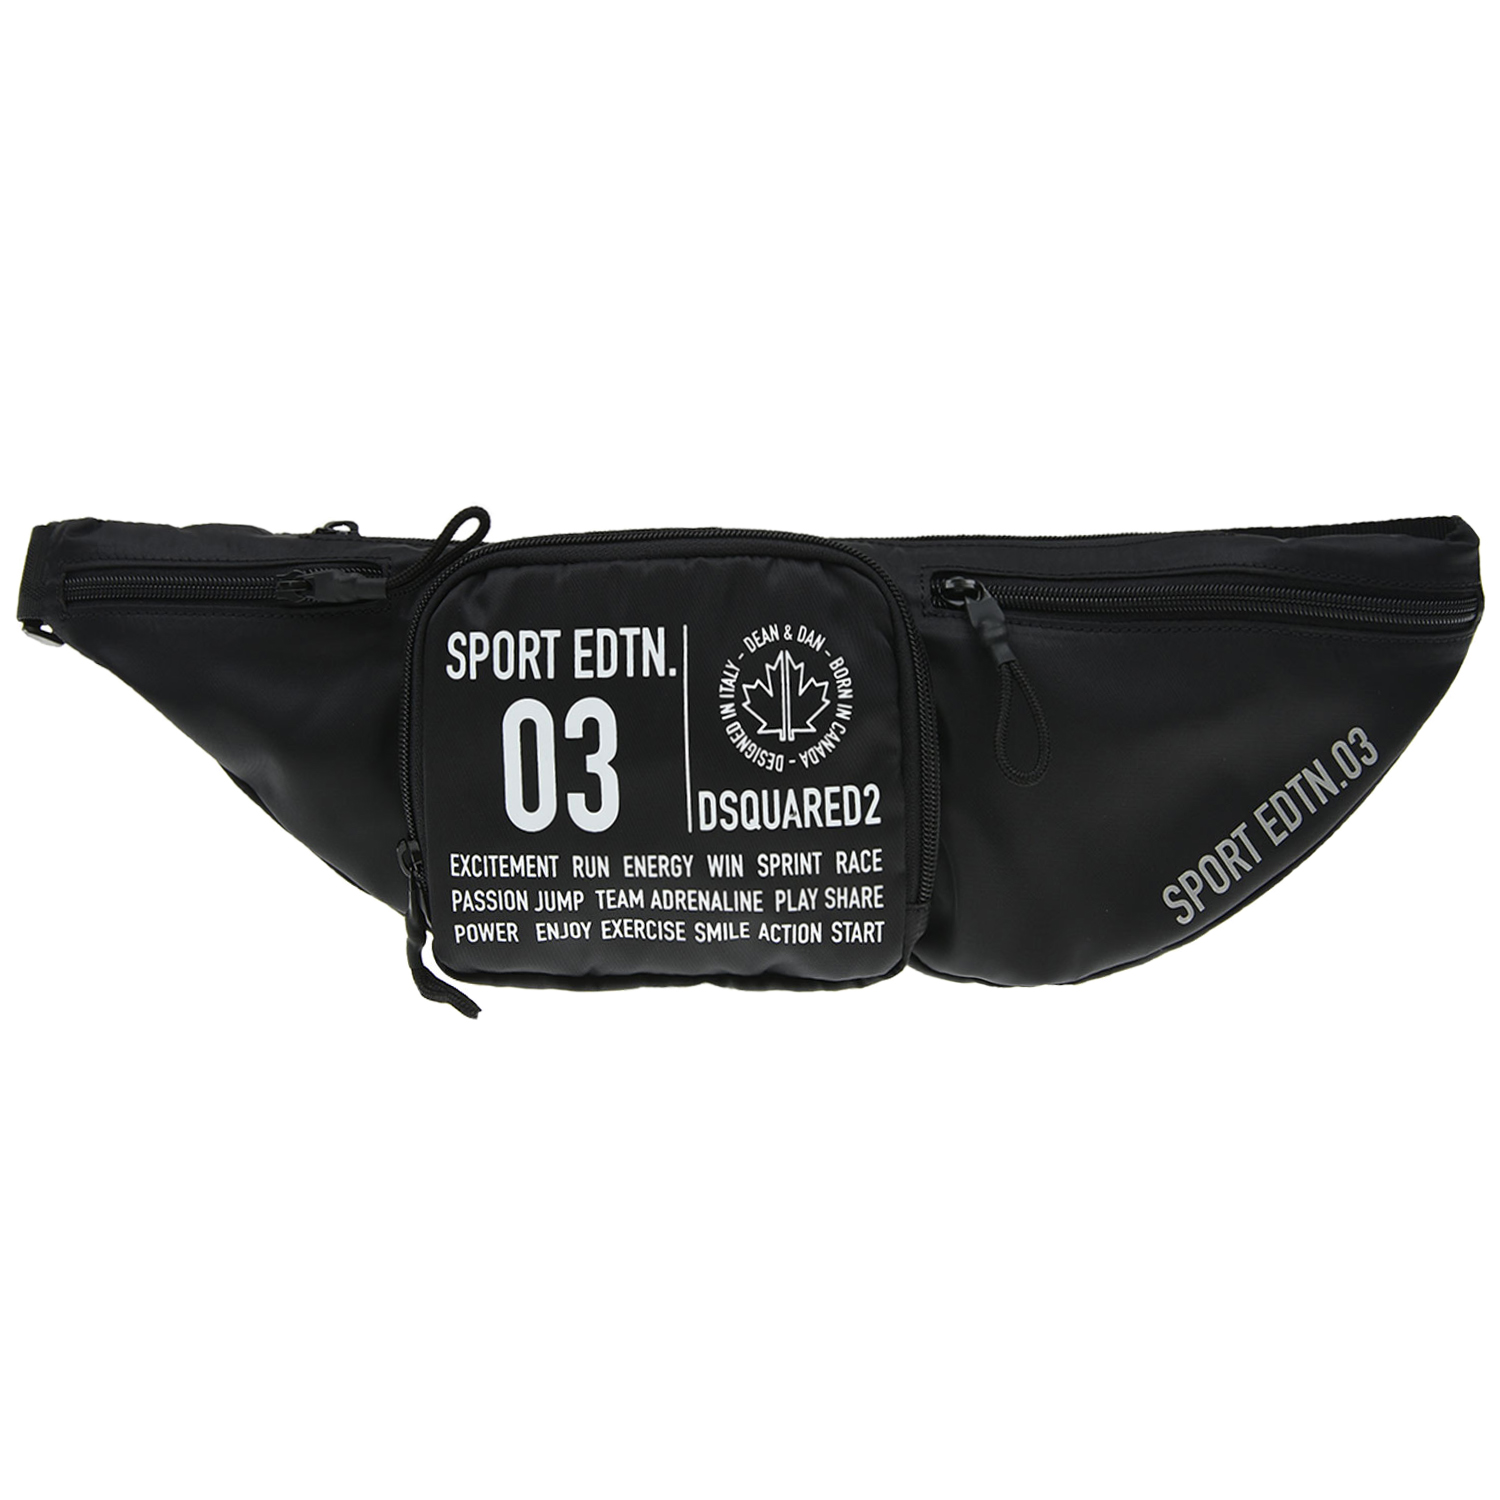 Черная поясная сумка с принтом "Sport edtn 03",15х7х45 см Dsquared2 детская, размер unica, цвет черный - фото 2